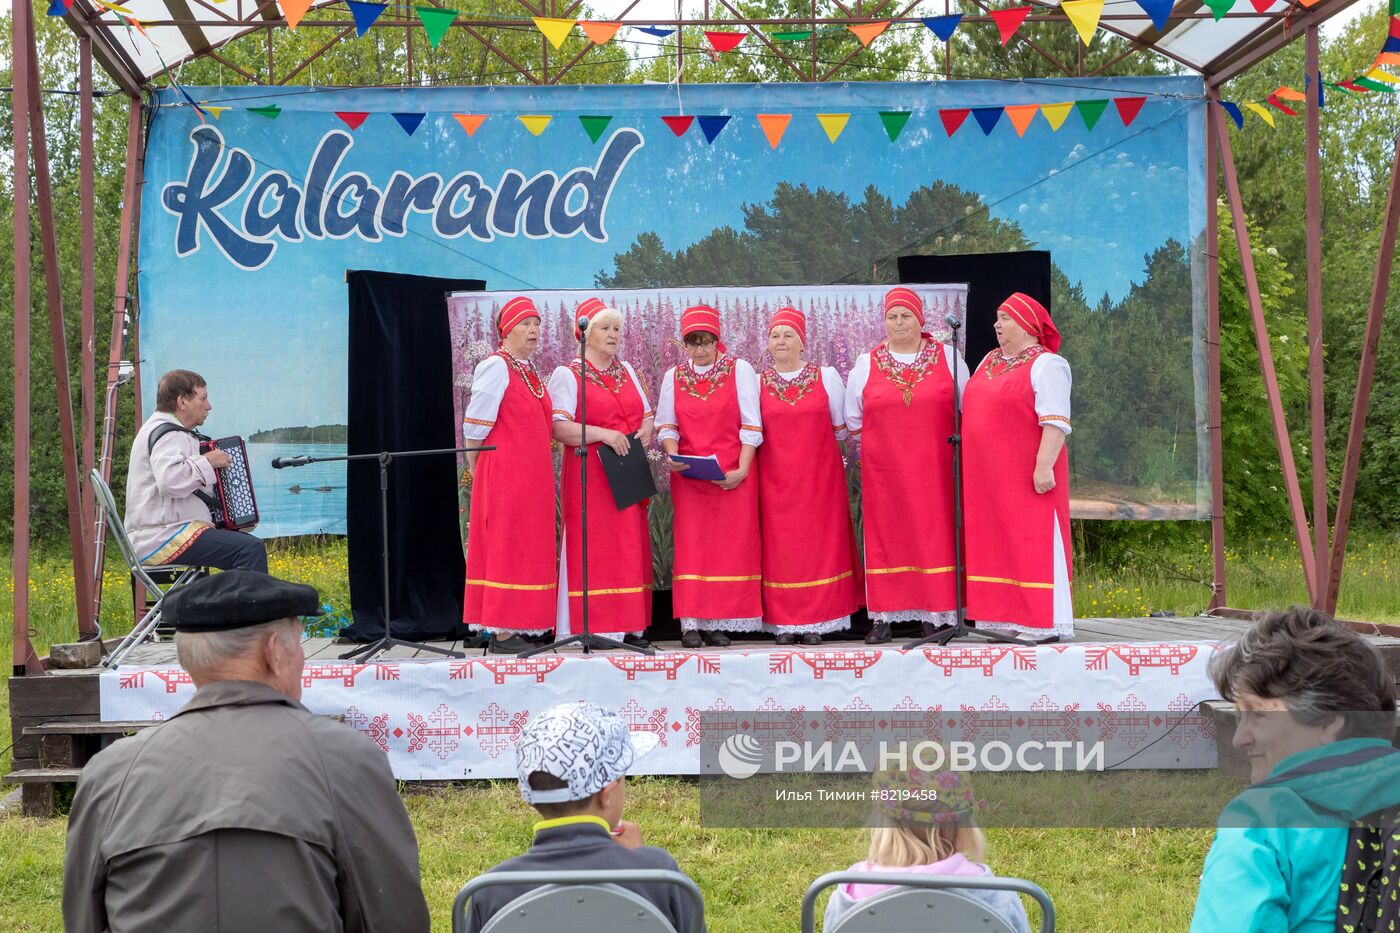 Фестиваль "Kalarand" в Карелии